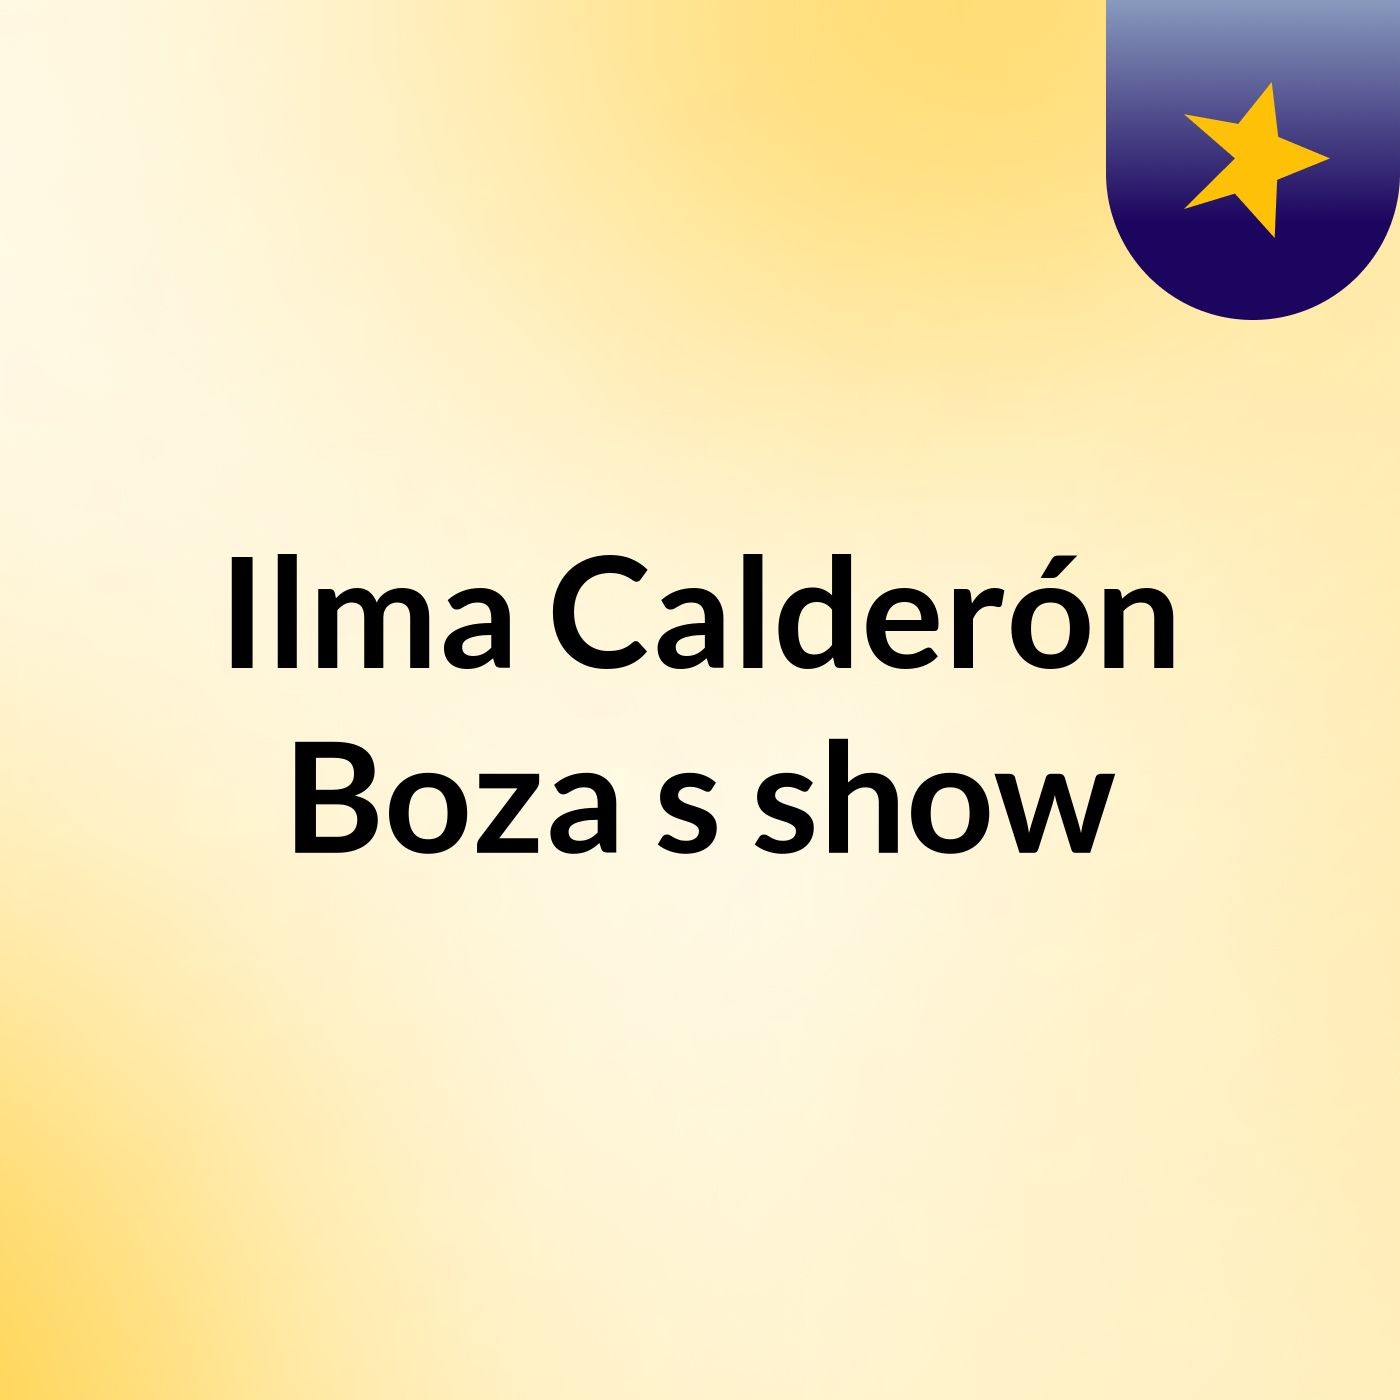 Ilma Calderón Boza's show